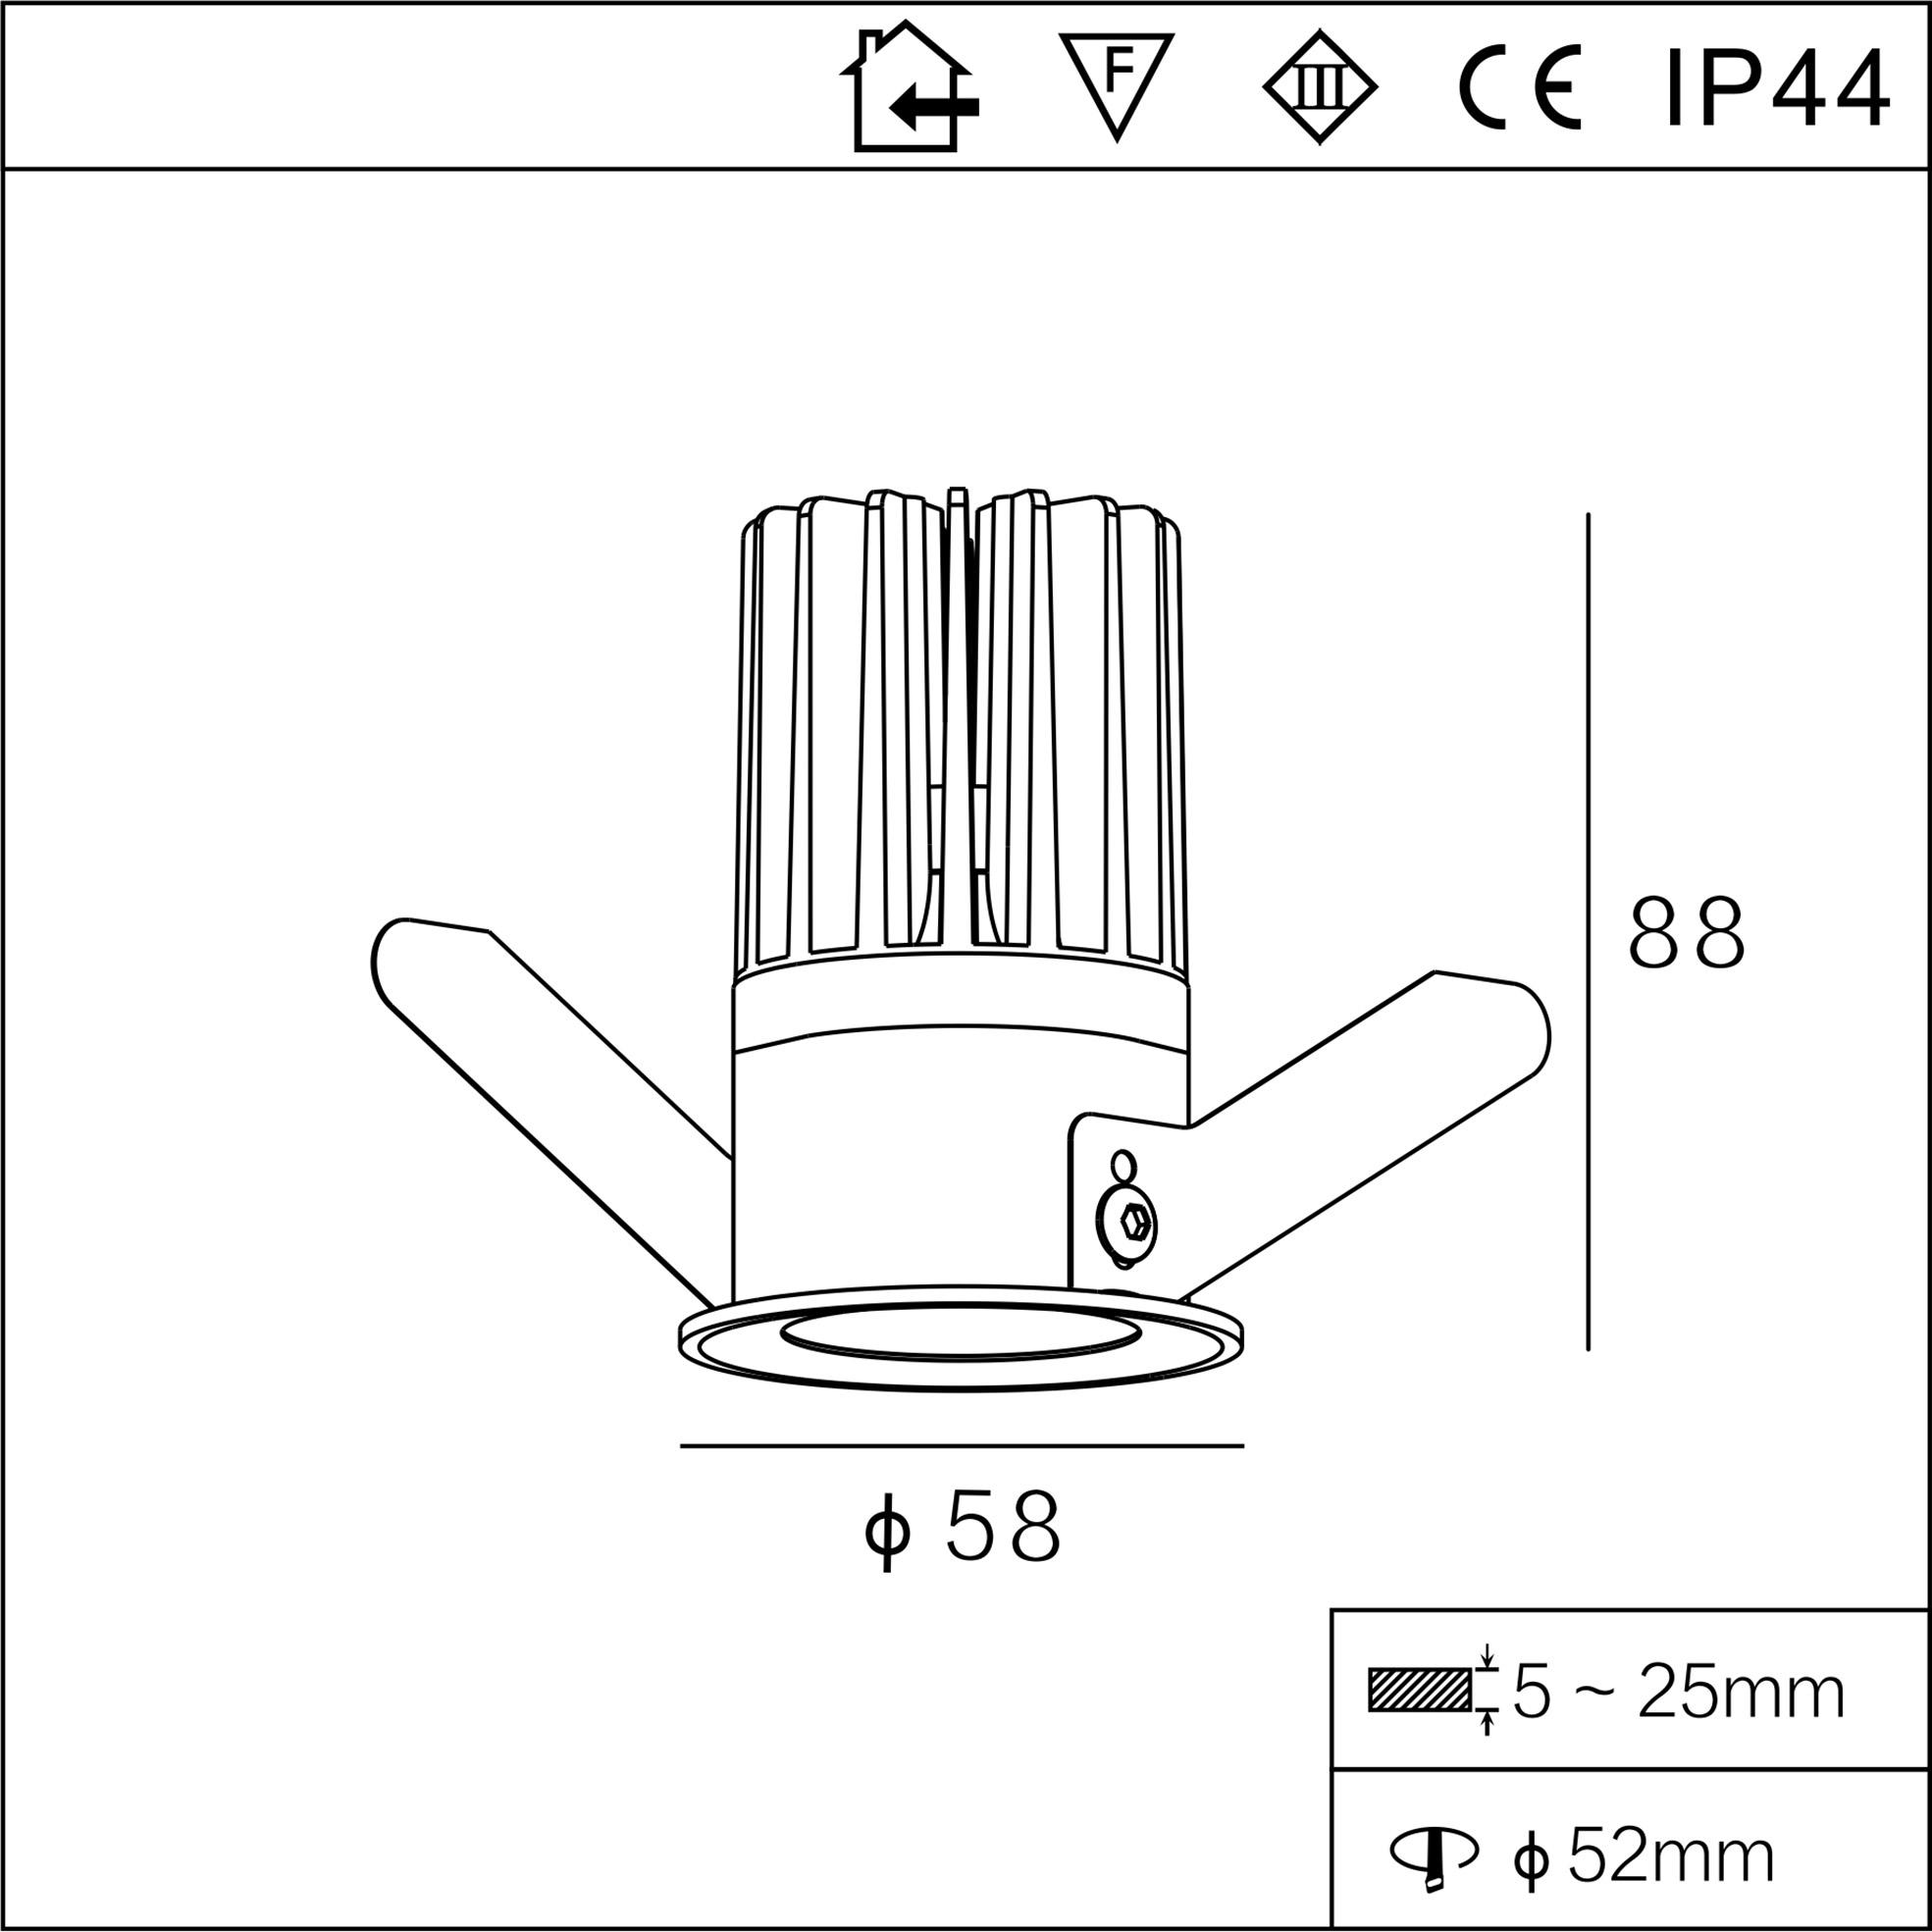 IP44 tinny slim 7w round CE downlight 